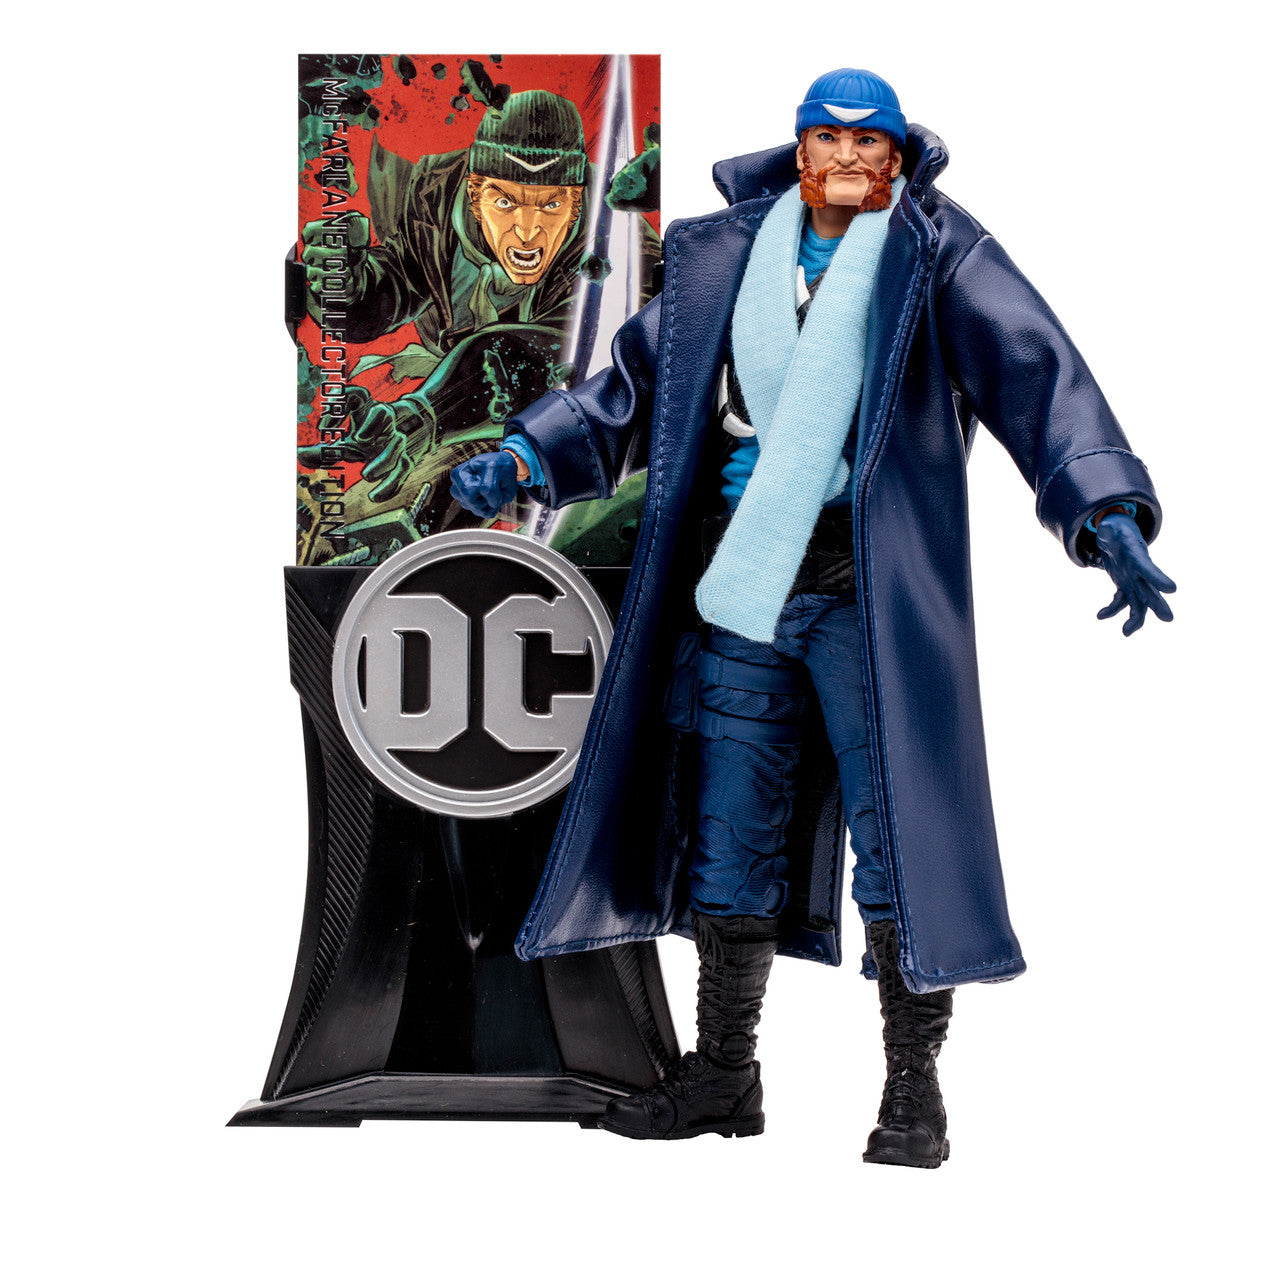 Captain Boomerang (The Flash) McFarlane Collector Edition 7" Action Figure